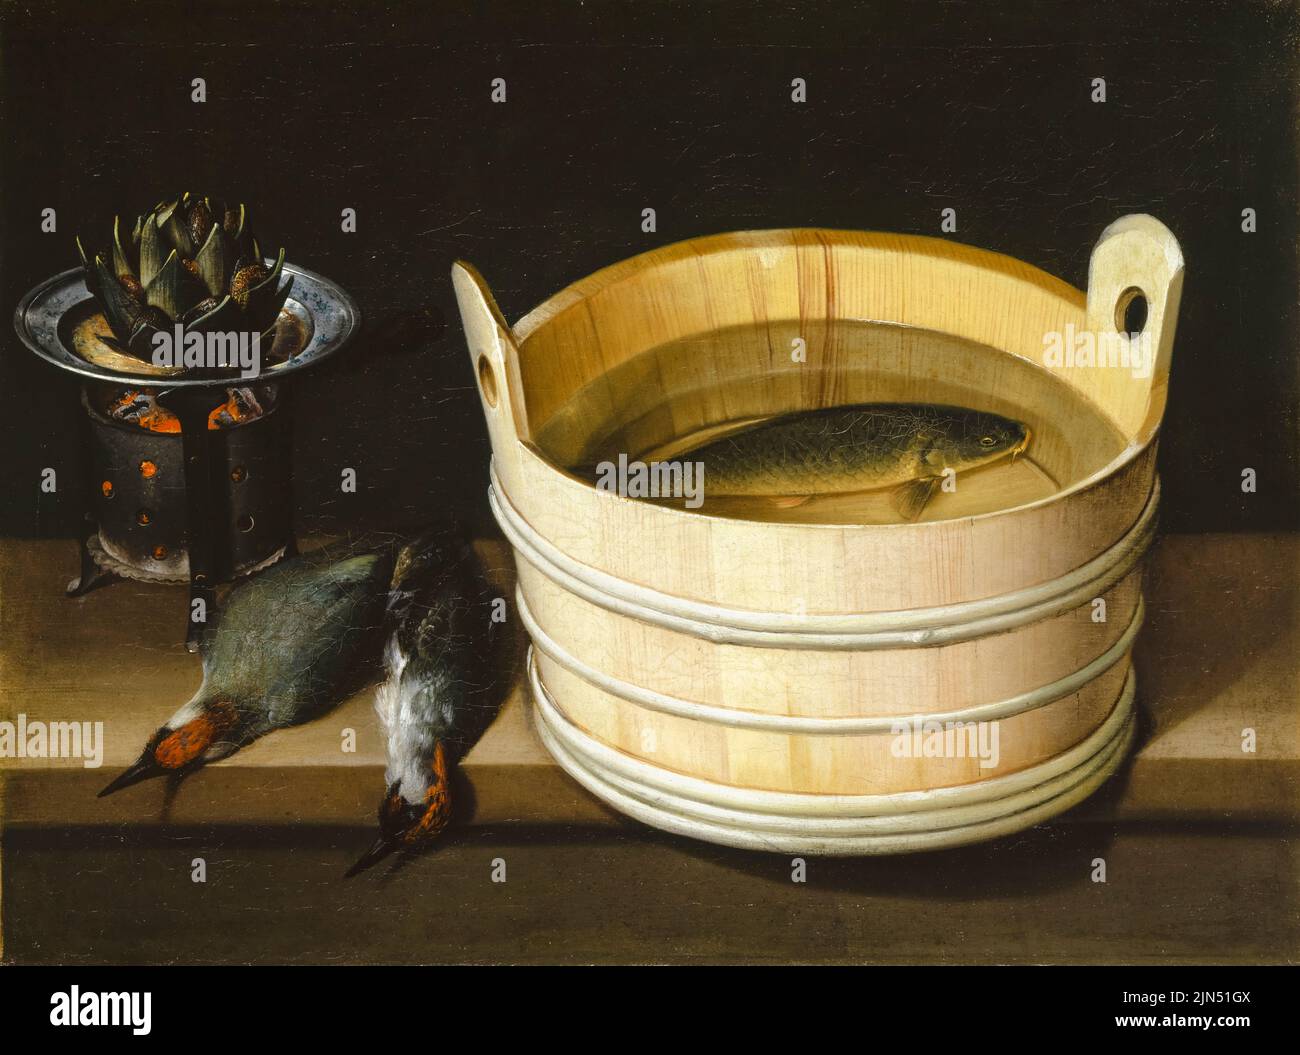 Sebastian Stoskopff, estufa Ember con alcachofas, carpinteros verdes y bañera de agua con carpa, pintura de bodegones al óleo sobre lienzo, antes de 1657 Foto de stock